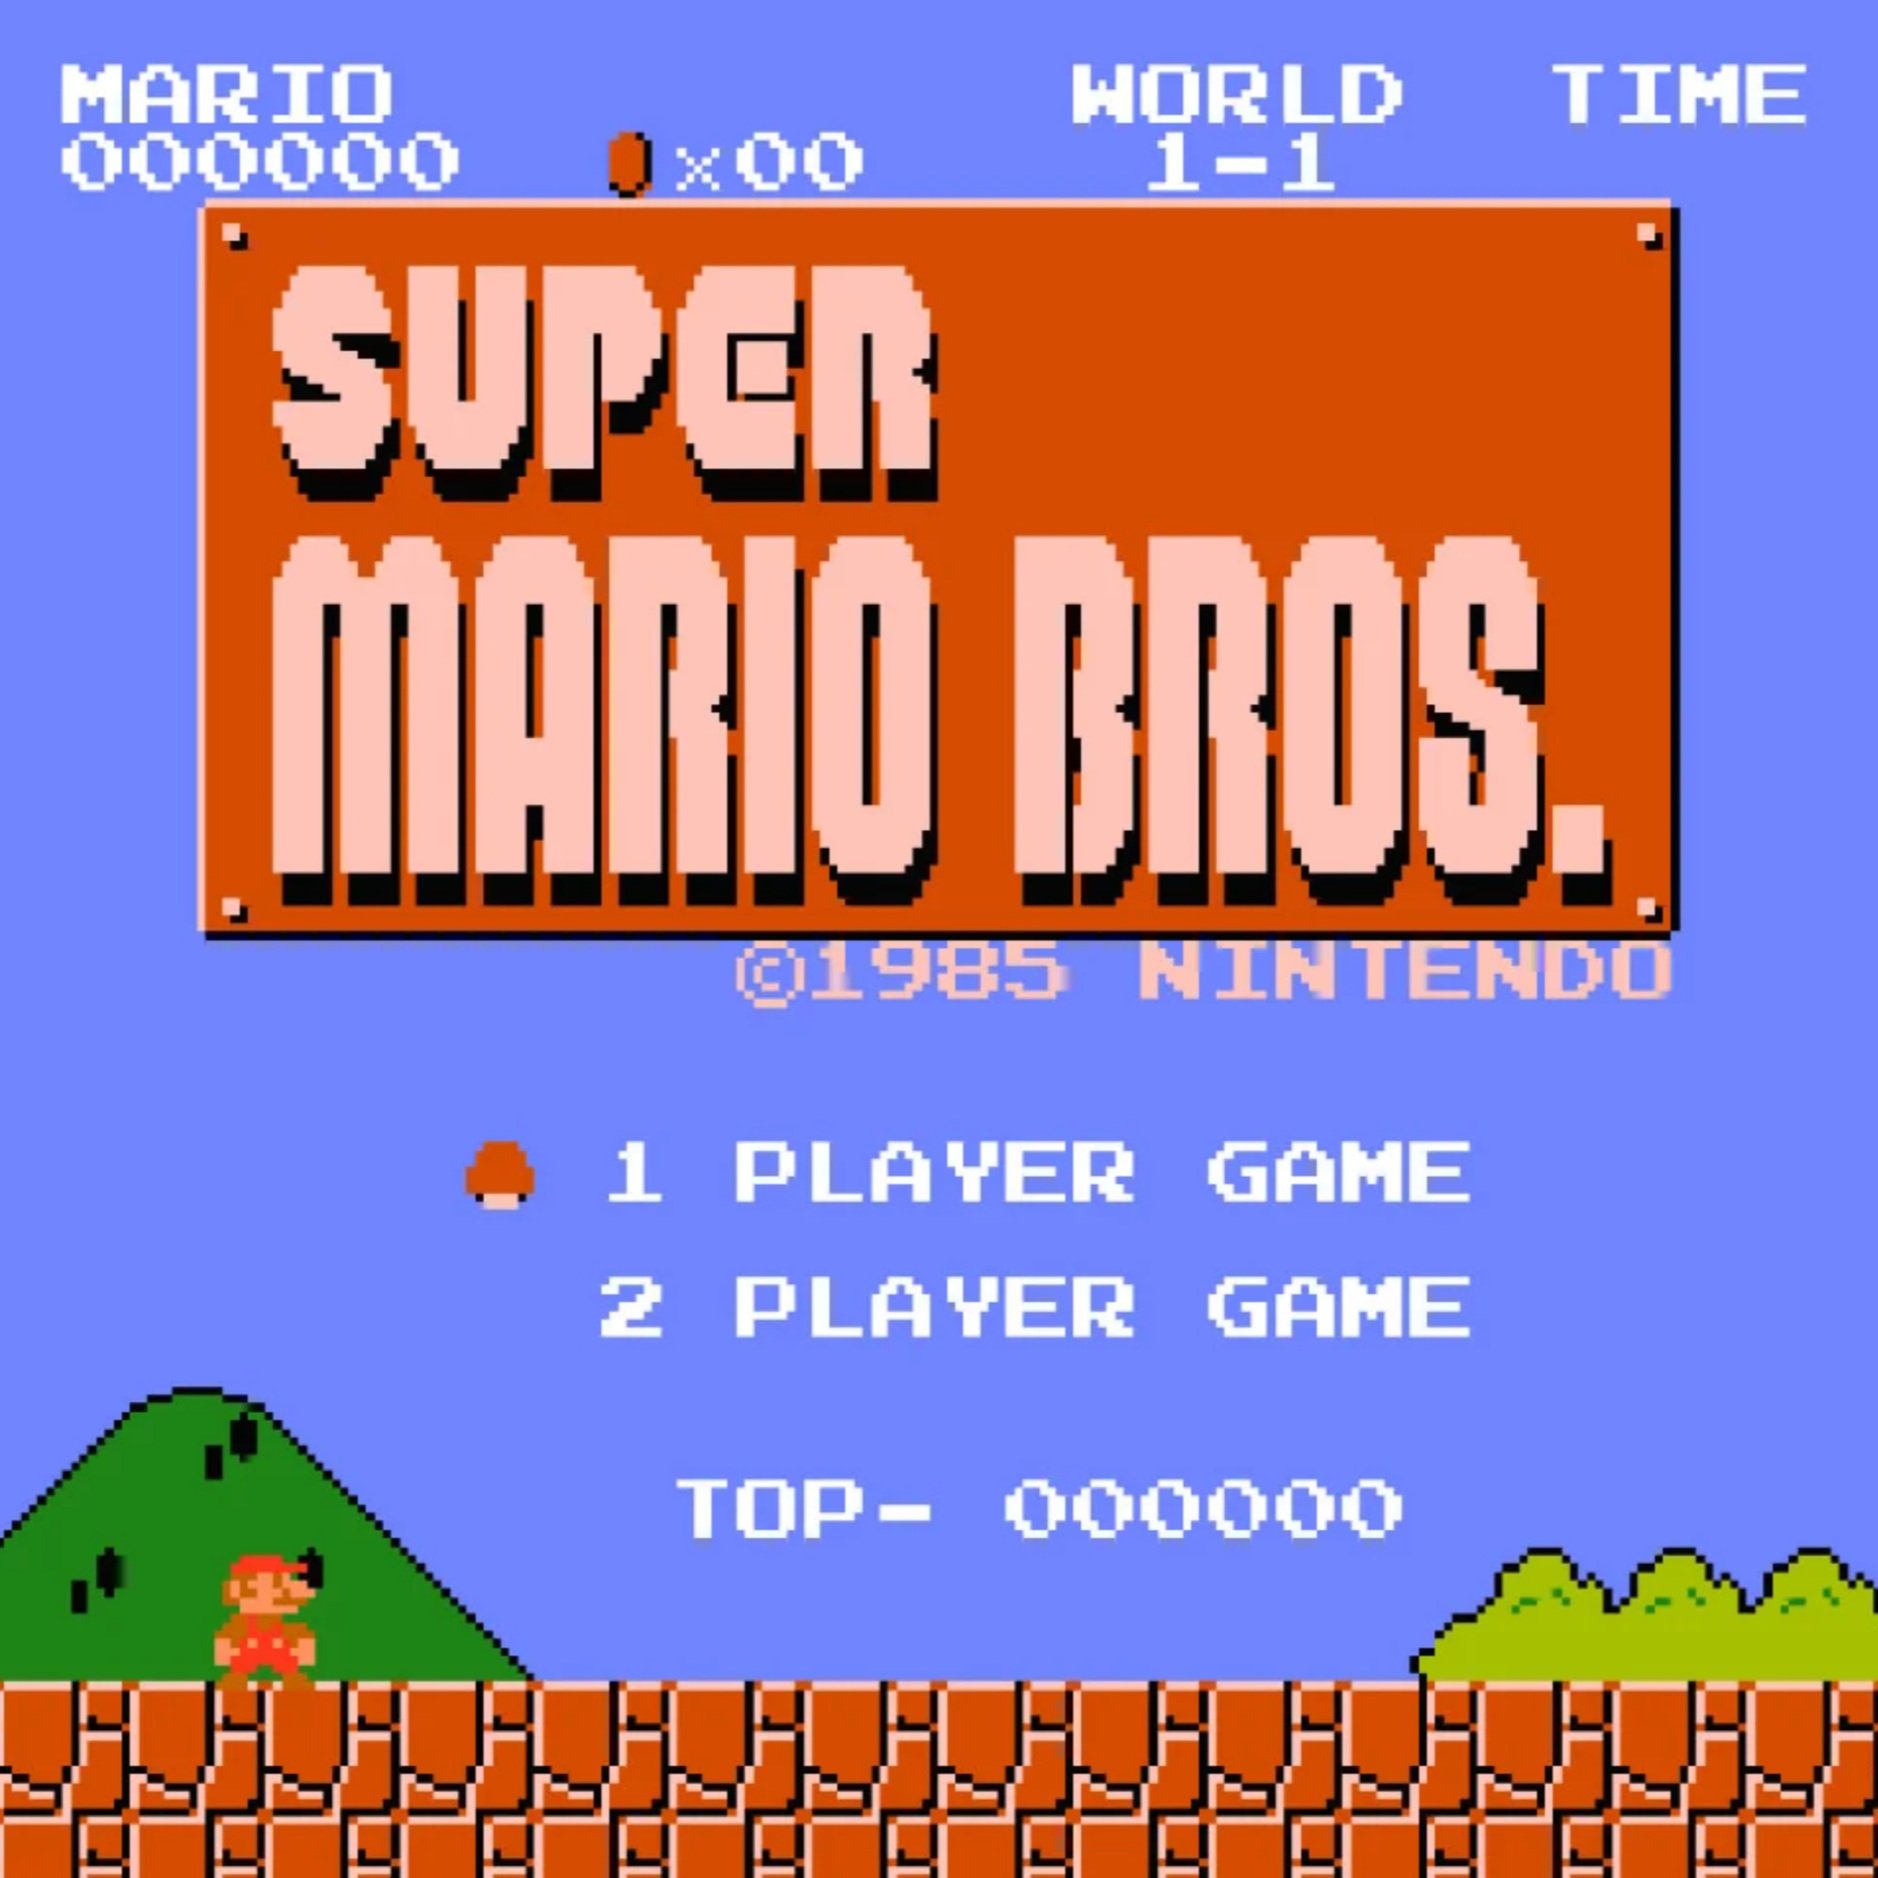 Koji Kondo's "Super Mario Bros. Theme"